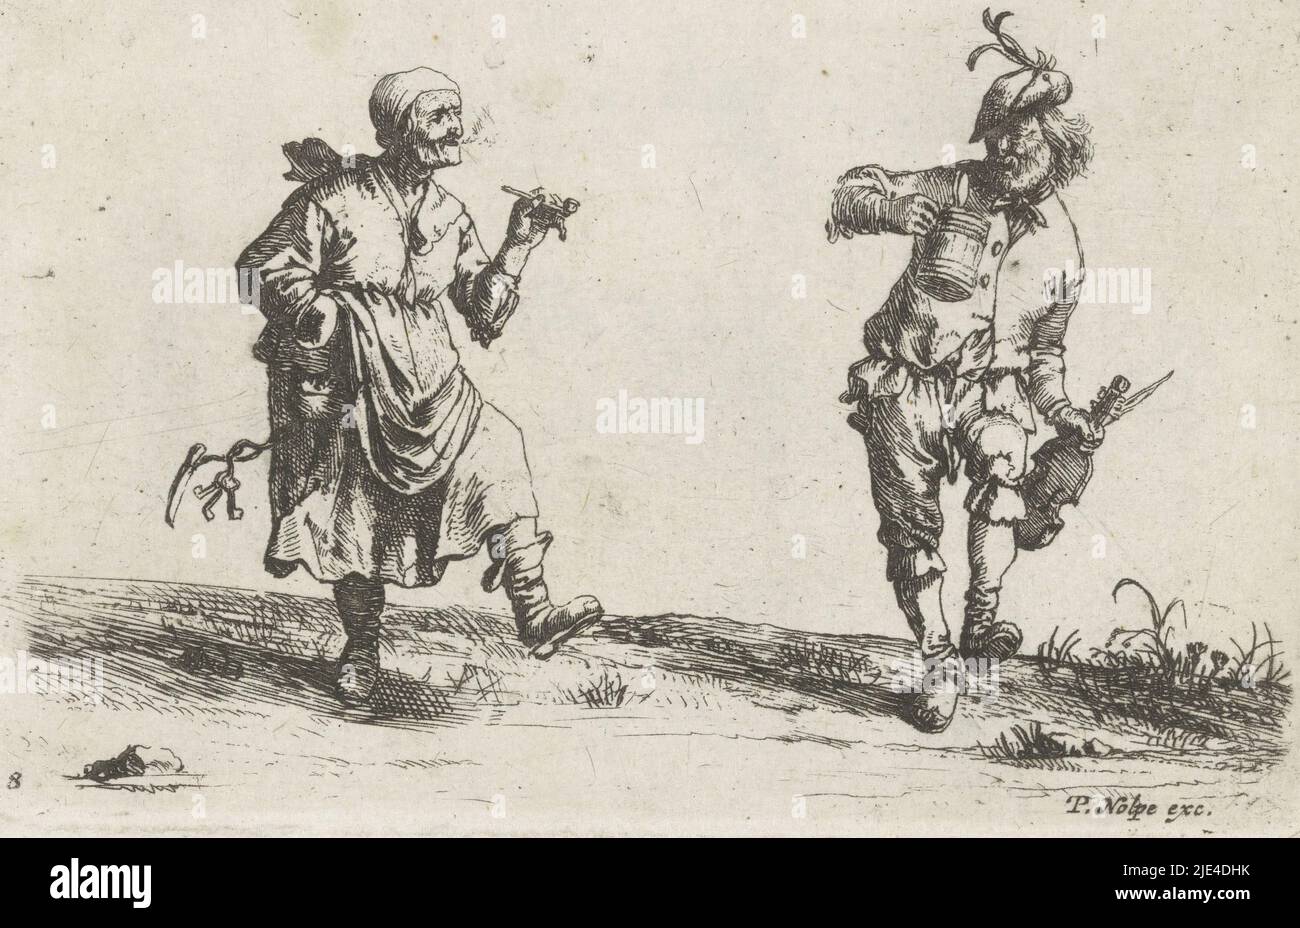 Une paysanne et paysanne dansante, Pieter Nolpe, d'après Pieter Jansz Quast, 1623 - 1653, Une paysanne et une paysanne dansent côte à côte dans l'herbe. La paysanne fume un tuyau et a un bouquet de clés et un couteau accroché à sa robe. Le paysan tient un gobelet d'une main et un violon de l'autre. L'imprimé fait partie d'une série de scènes de la vie paysanne., imprimeur: Pieter Nolpe, Pieter Jansz. Quast, éditeur: Pieter Nolpe, (mentionné sur l'objet), Amsterdam, 1623 - 1653, papier, gravure, gravure, h 80 mm - l 120 mm Banque D'Images